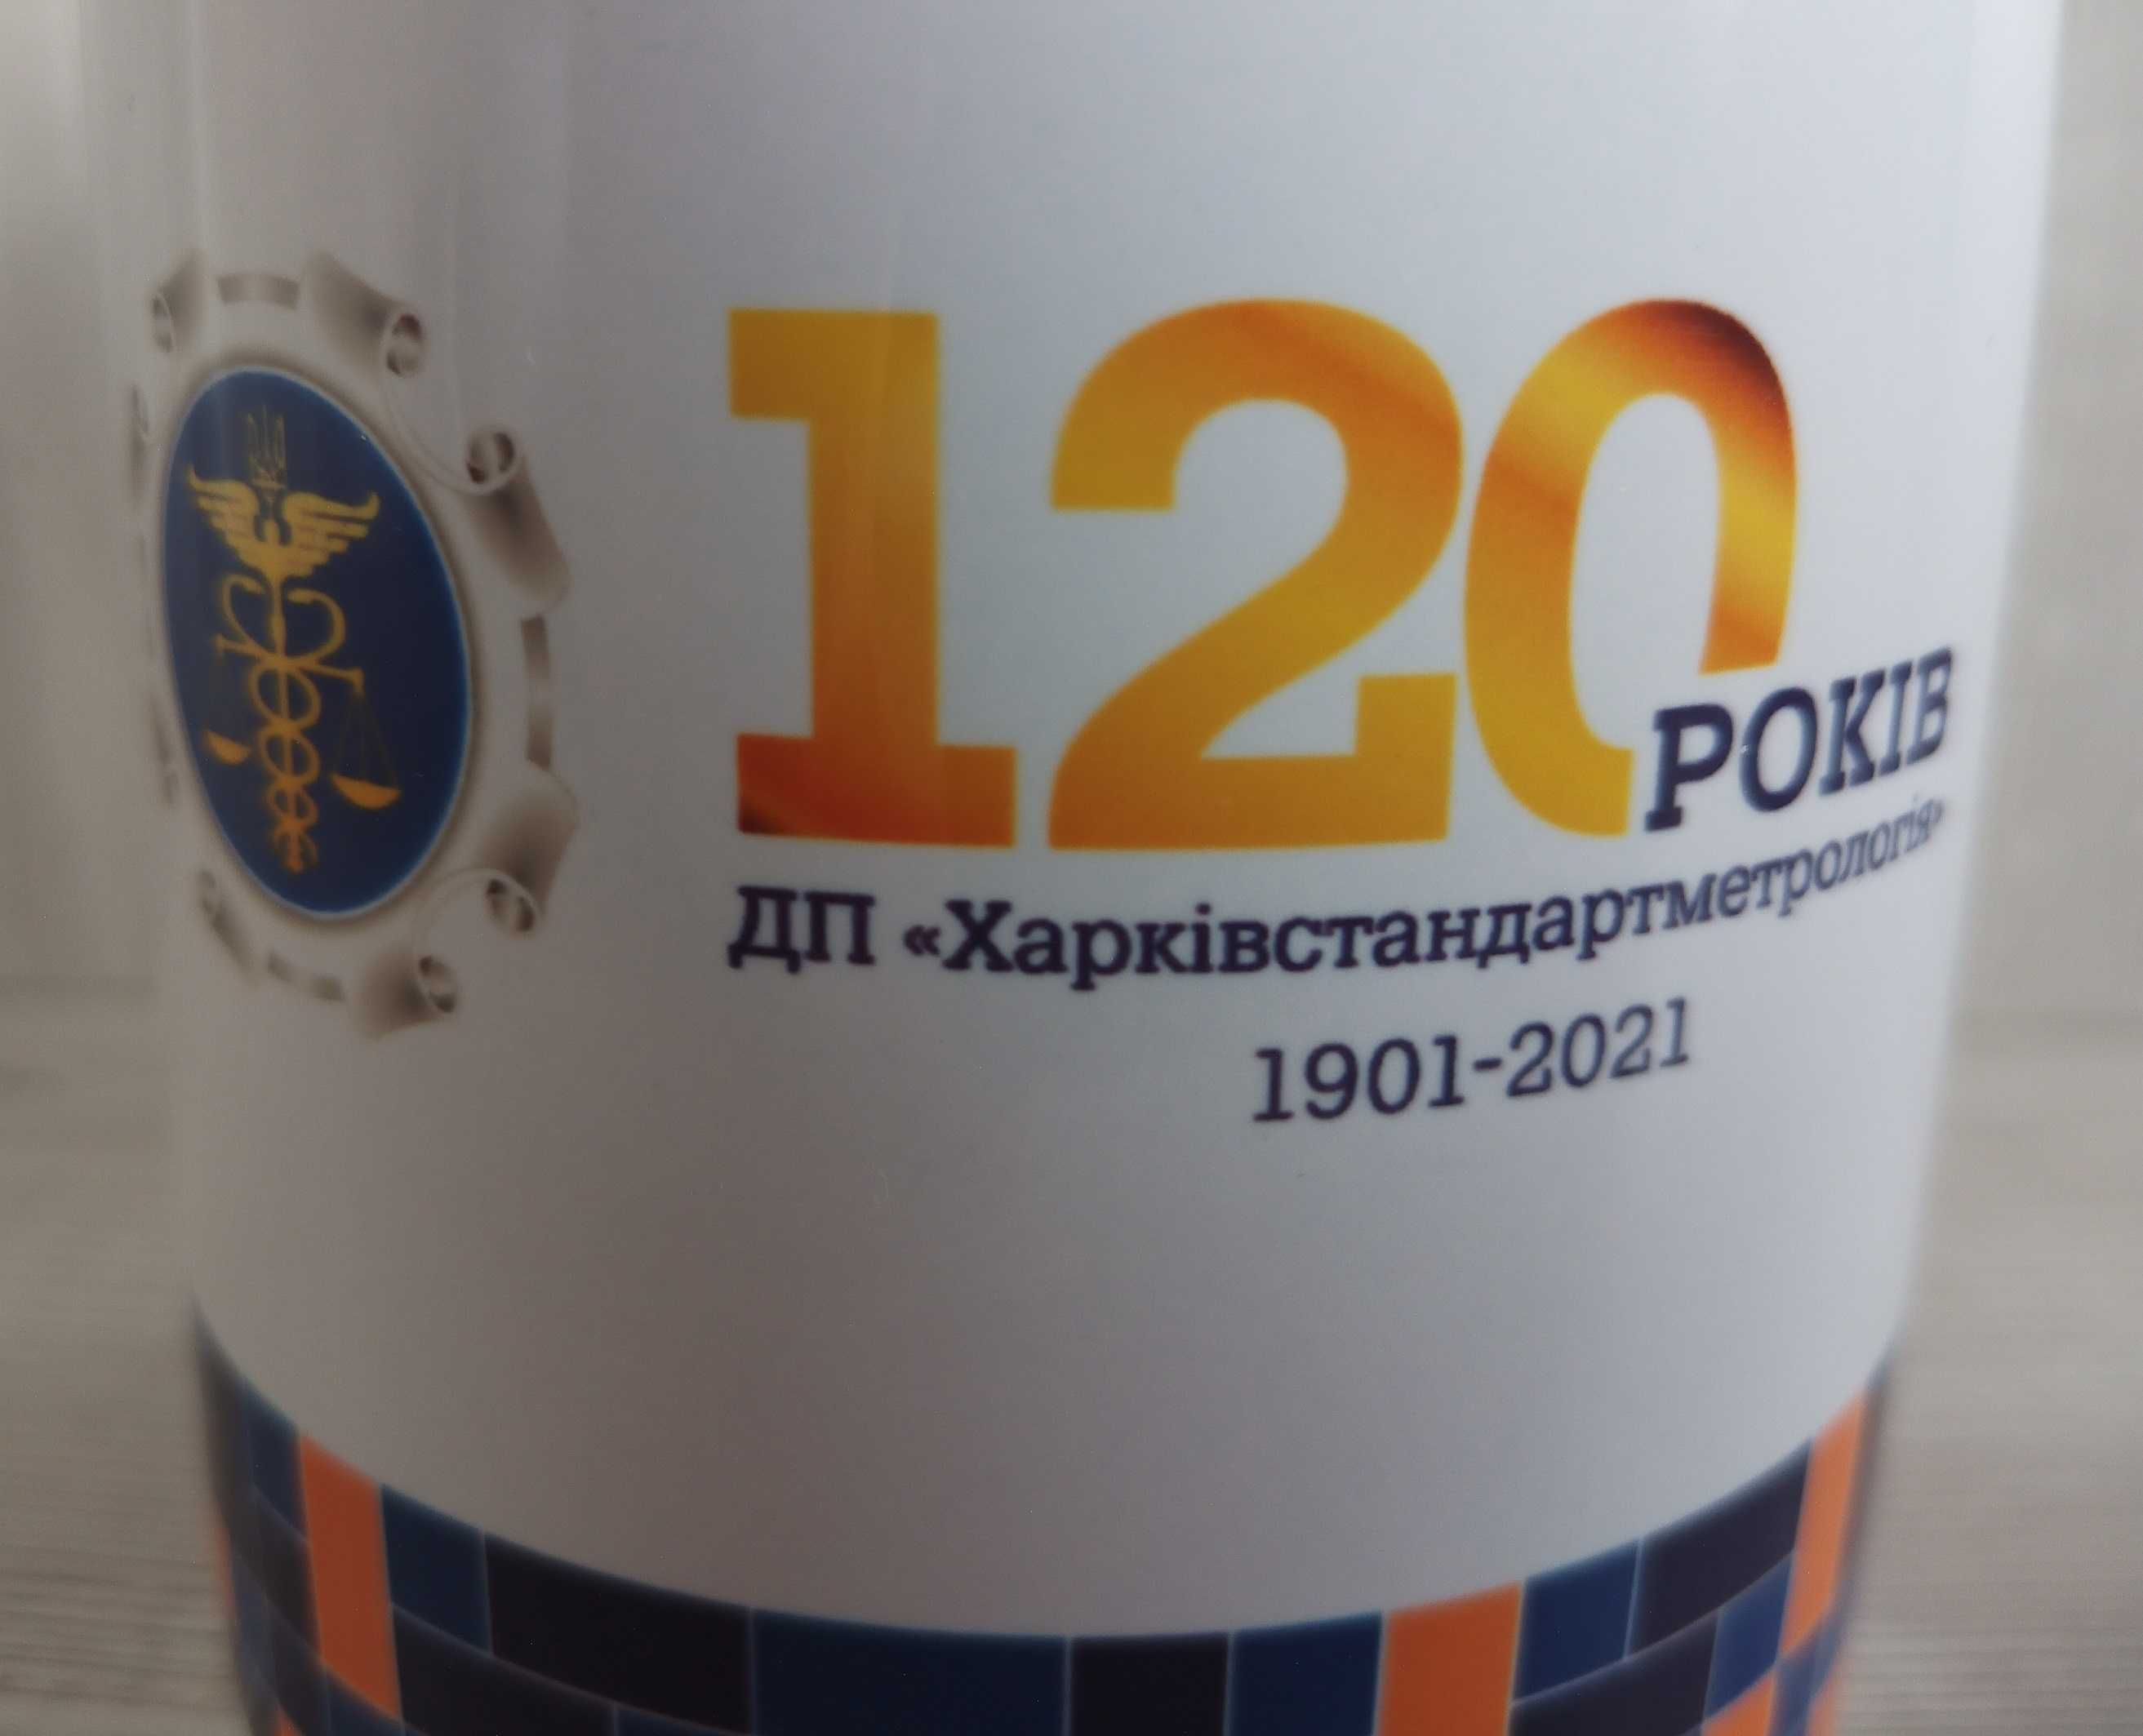 Юбилейная Чашка 120 рокiв ДП ХСМ 1901-2021 Харьков Сувенир